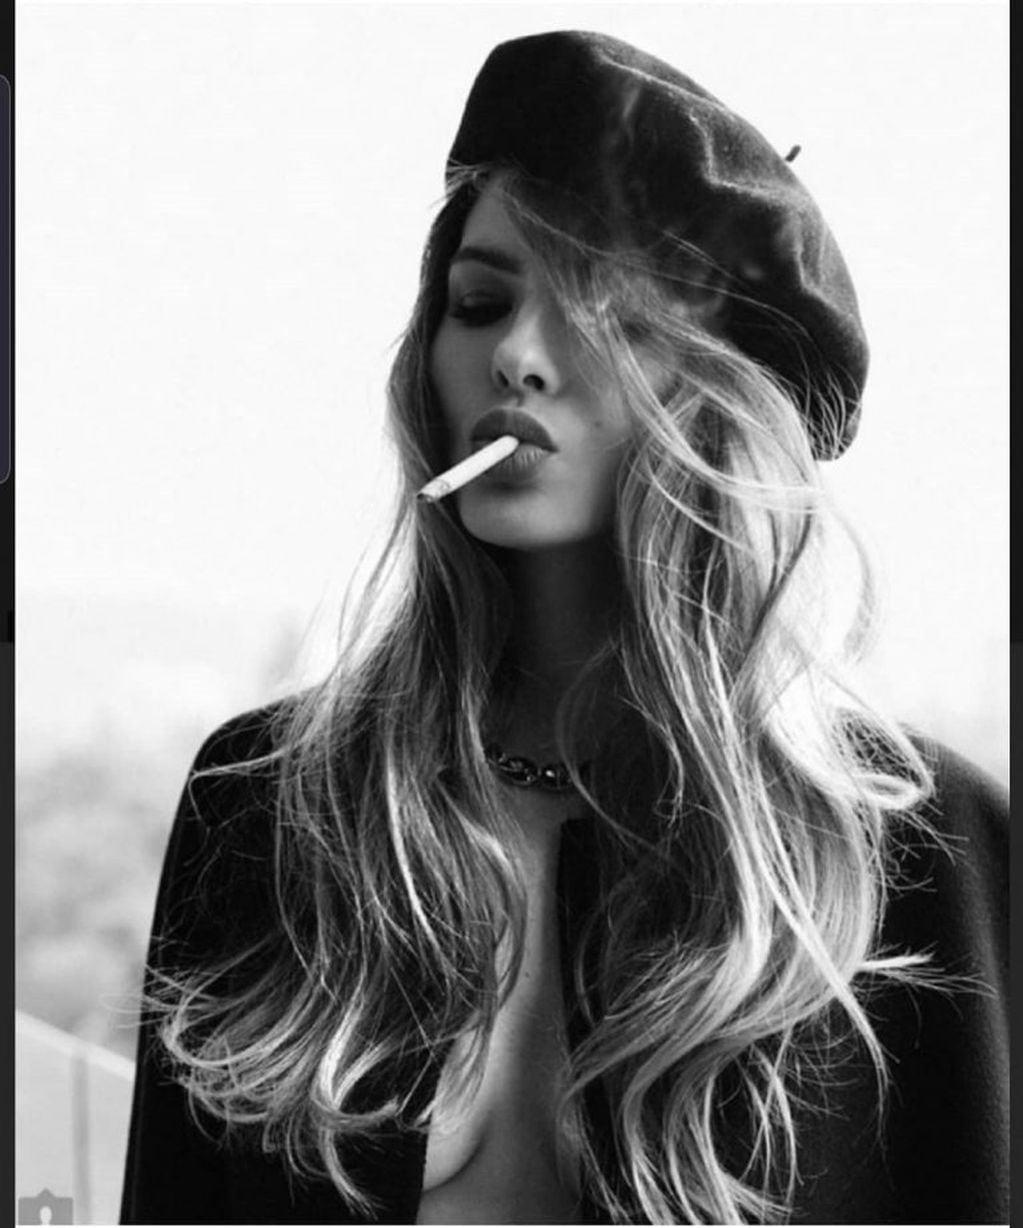 La China Suárez posó en topless fumando un cigarrillo  (Foto: Instagram/ @sangrejaponesa)